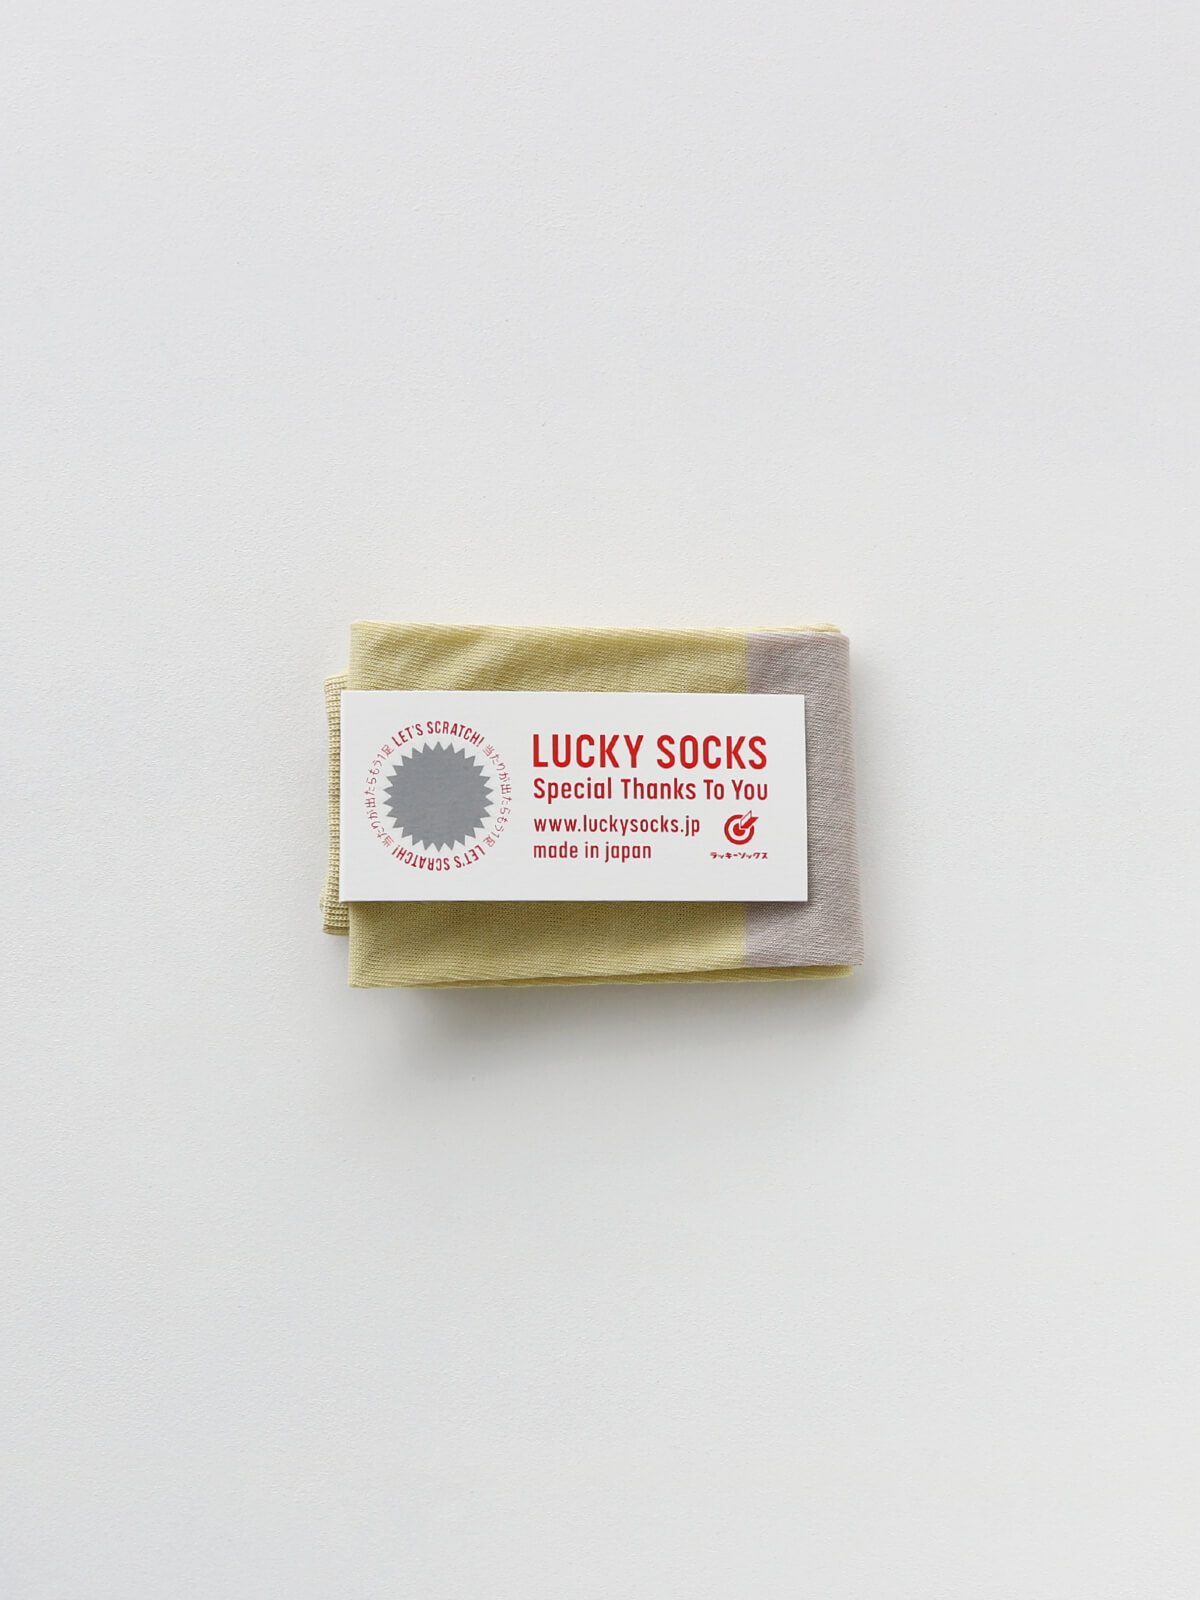 当たりつきギフト専用靴下のLUCKY SOCKS（ラッキーソックス）のSunscreen 2tone Armcover（サンスクリーン2トーンアームカバー）のペールイエロー×グレージュ_1